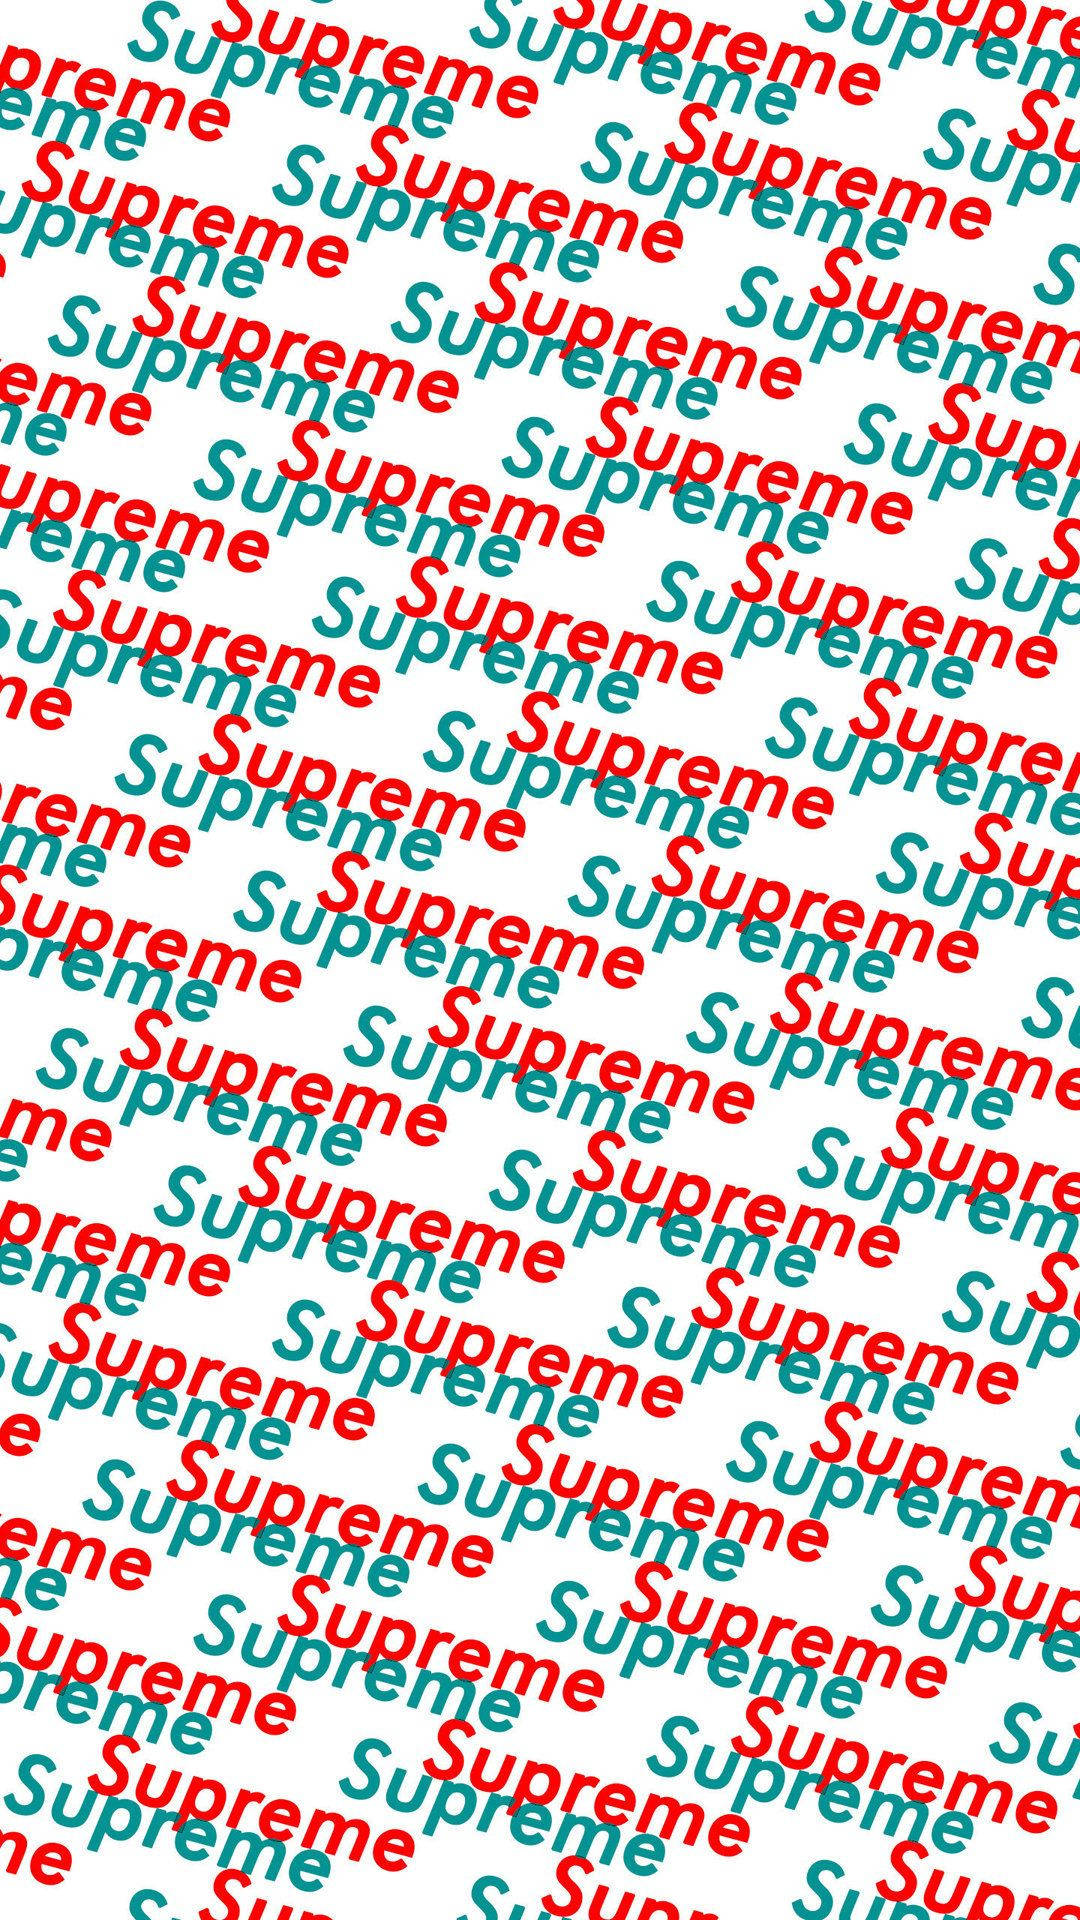 Supreme 1080X1920 wallpaper